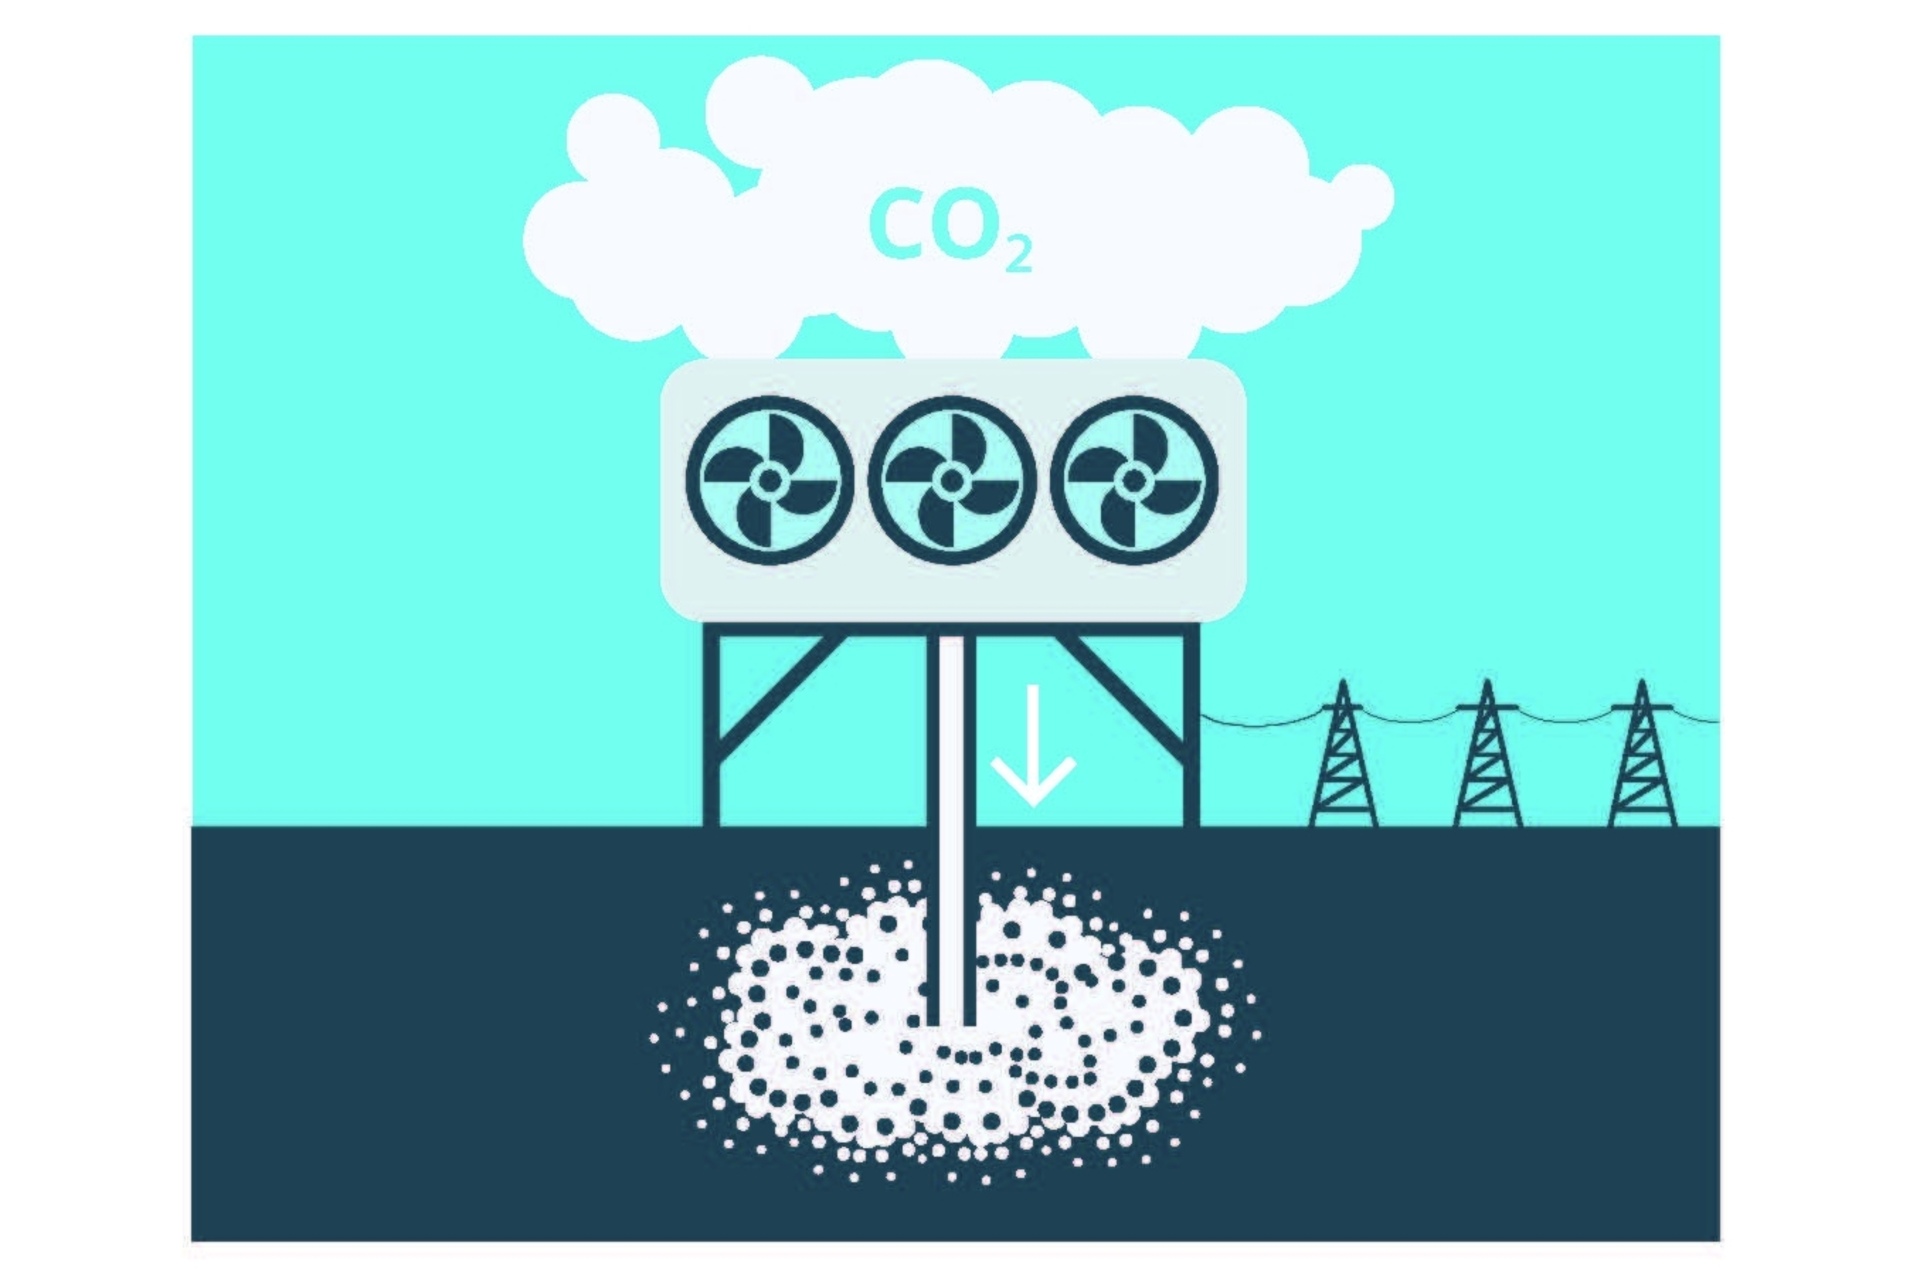 CO2: per conto di TA-SWISS, l'Öko-Institut e l'EMPA hanno valutato cinque NET rilevanti per la Confederazione